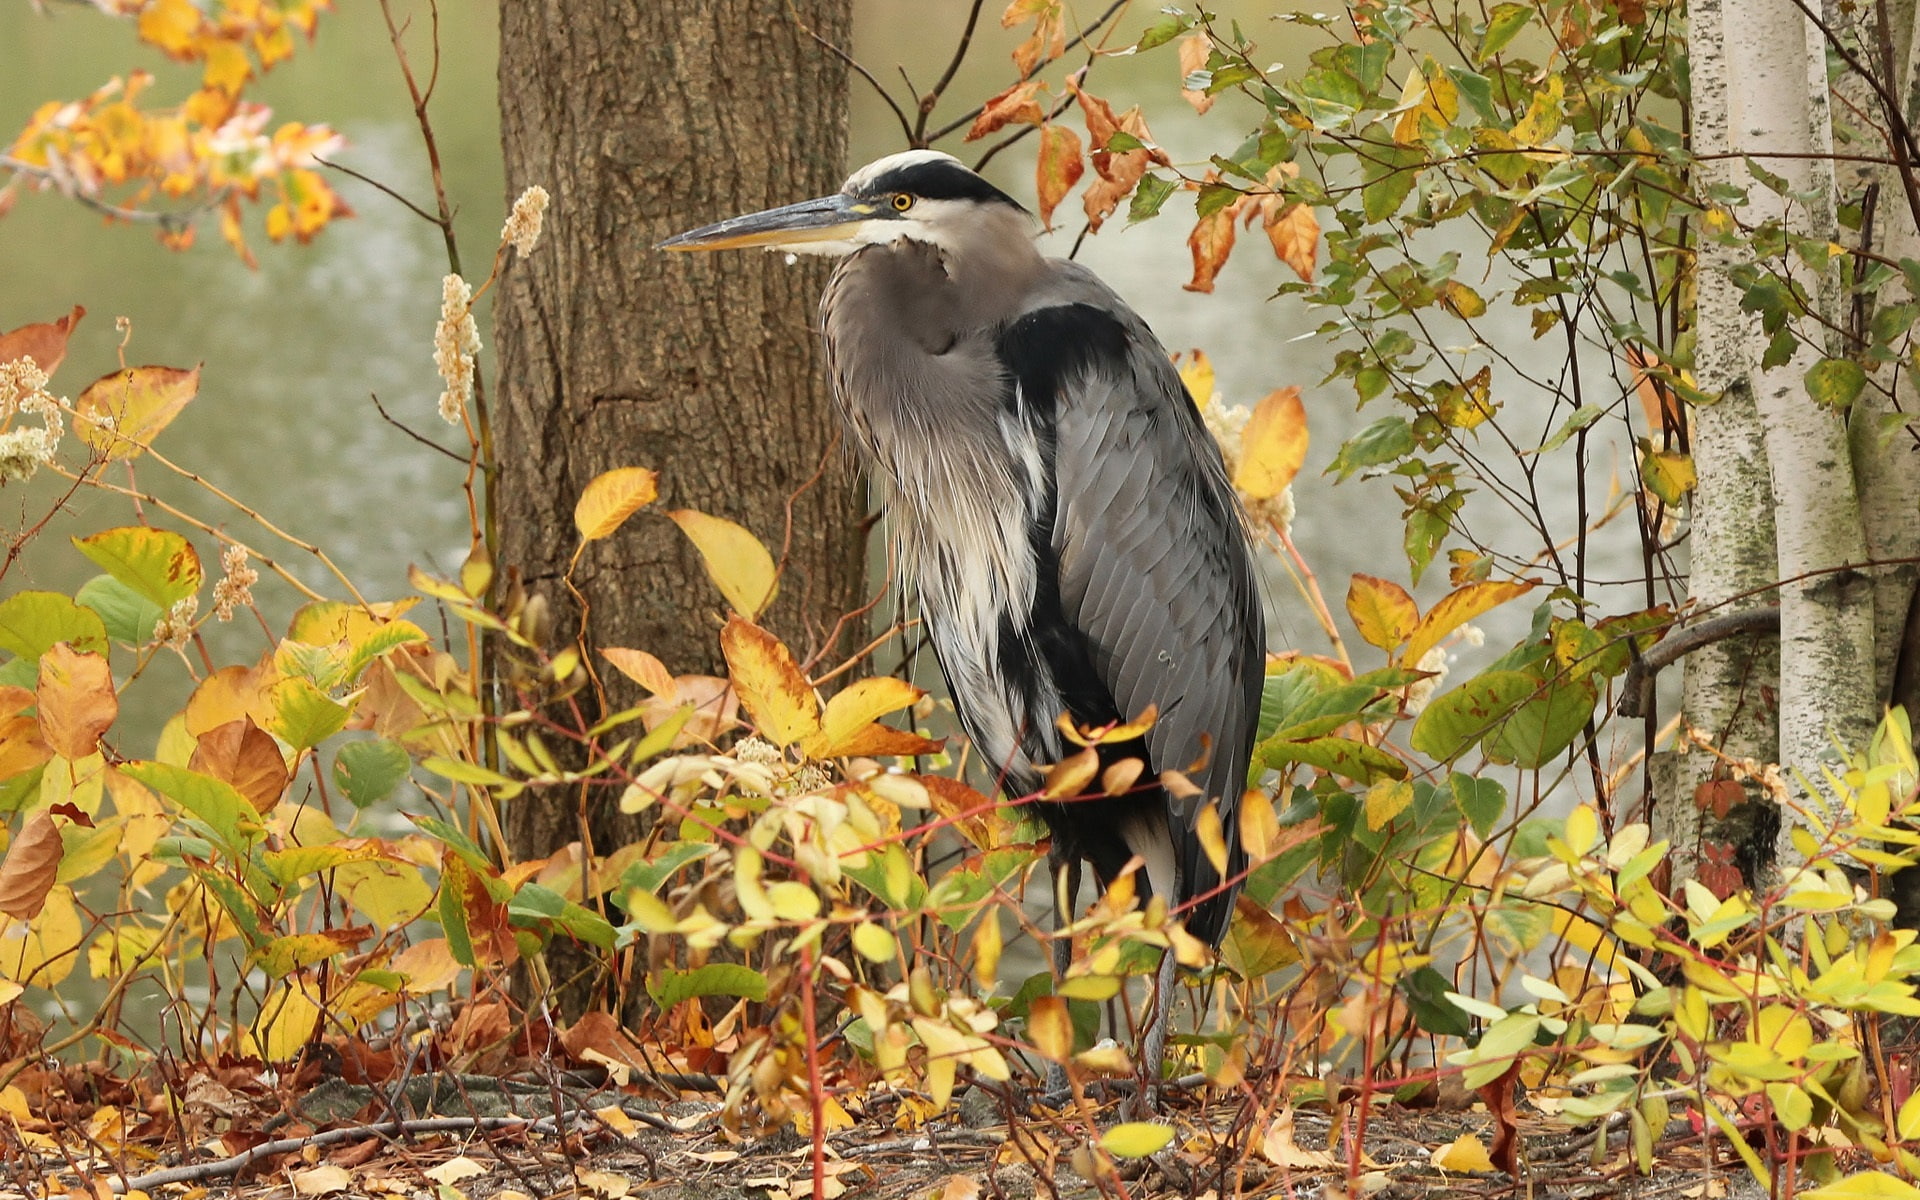 Gray heron, bird, trees, autumn